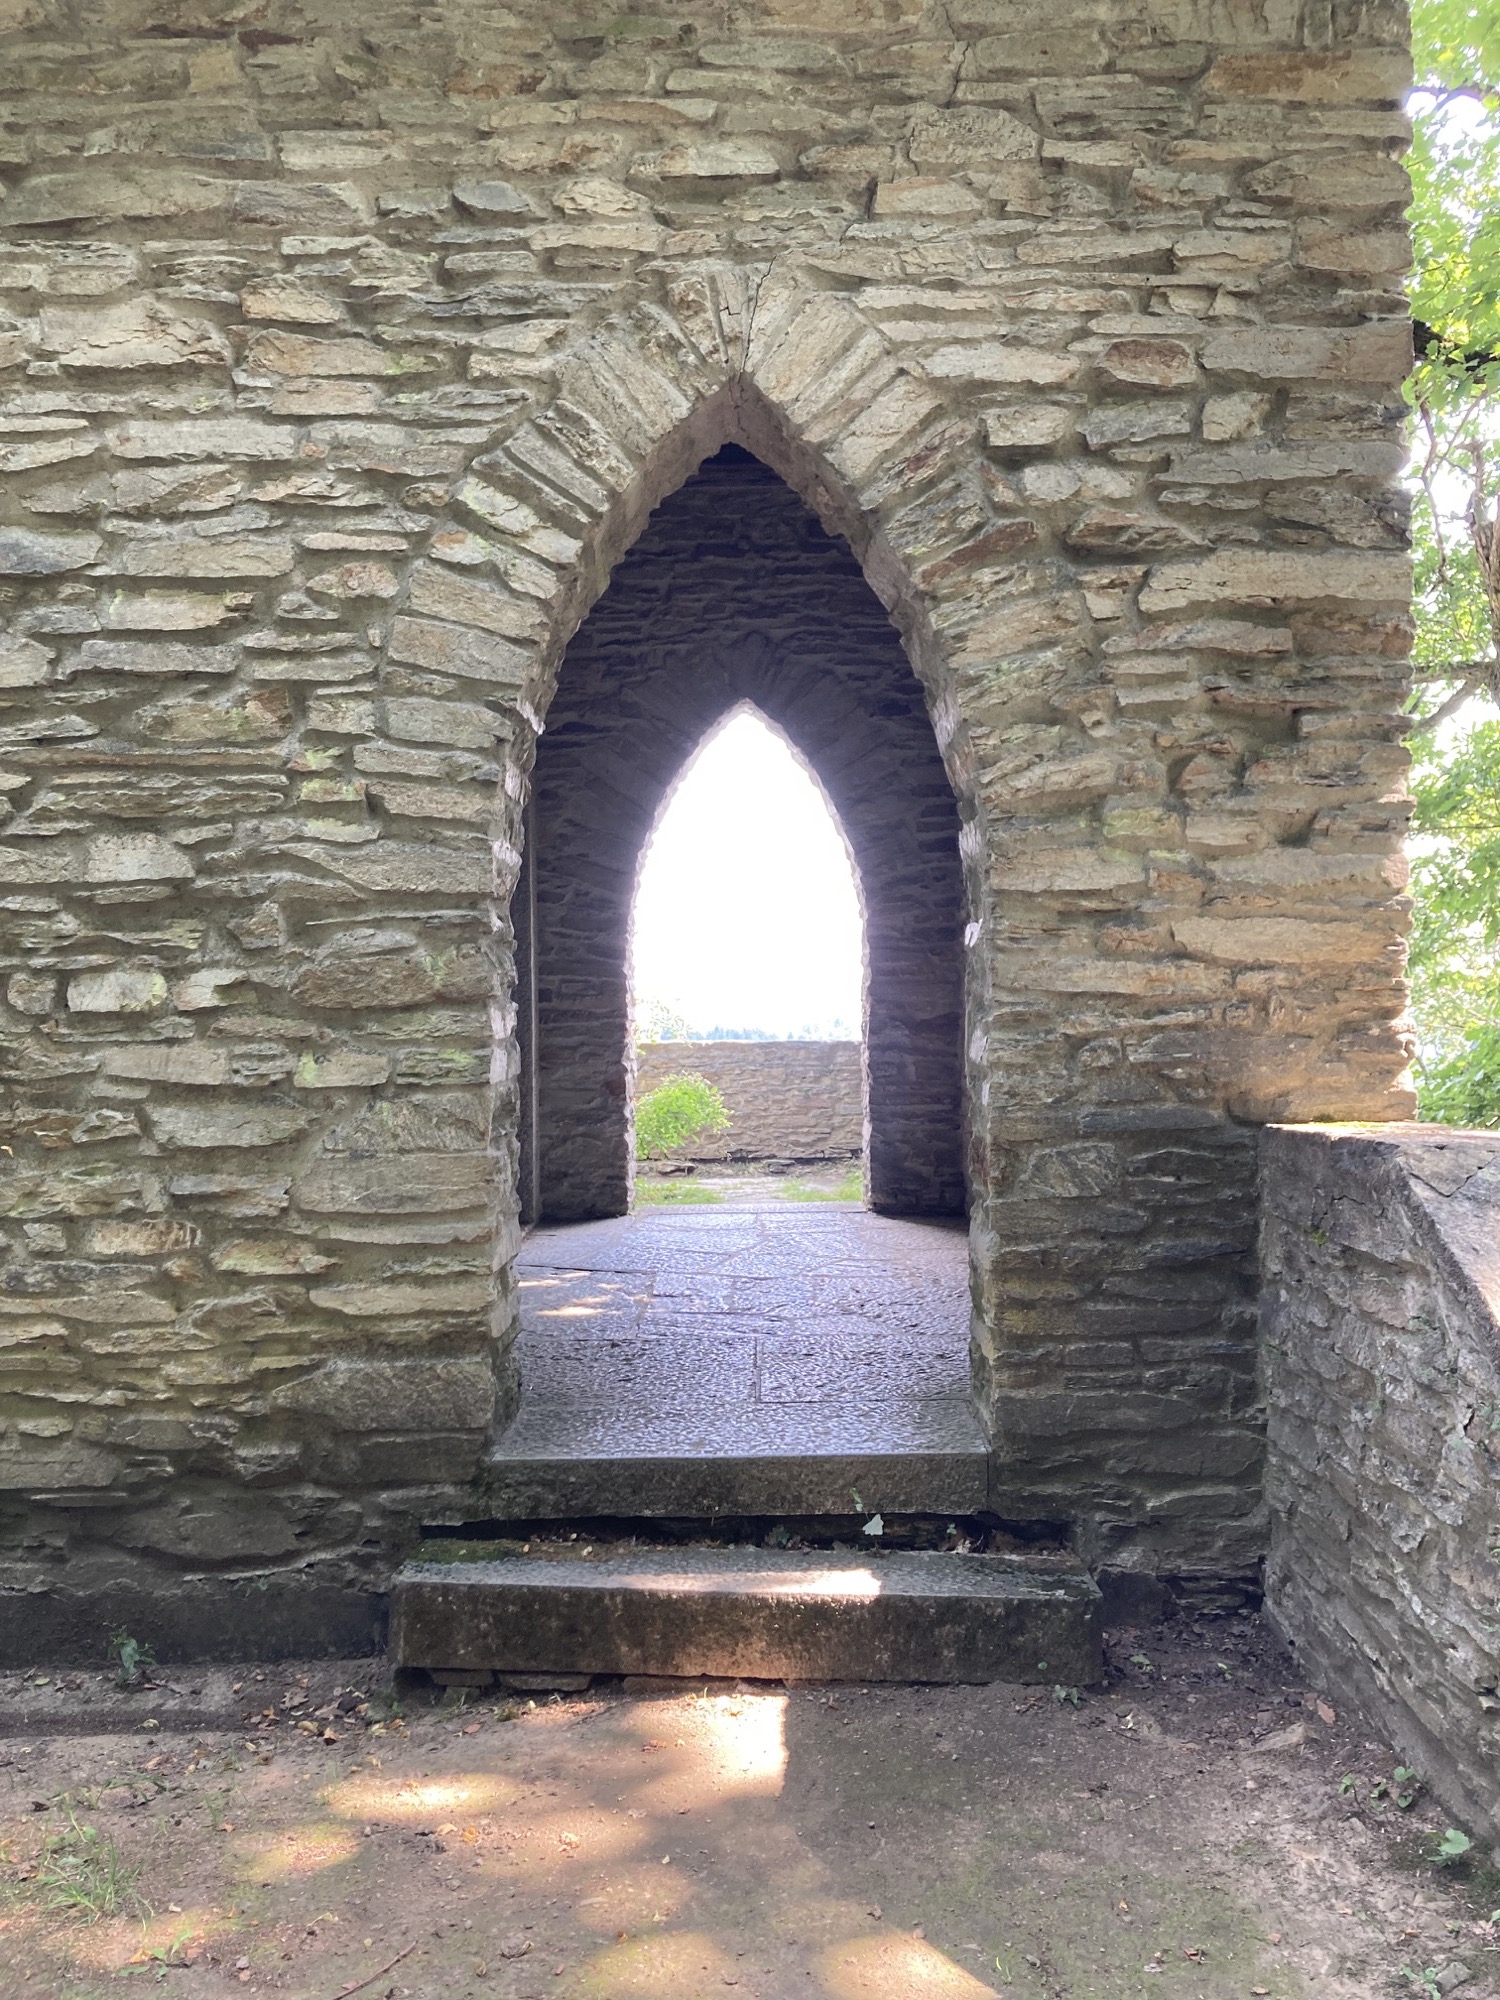 Blick durch die zwei oben zugespitzten Türen des Klinger-Mausoleums, dahinter befindet sich eine kleine Aussichtsplattform, die einen schönen Blick über das Thayatal ermöglicht